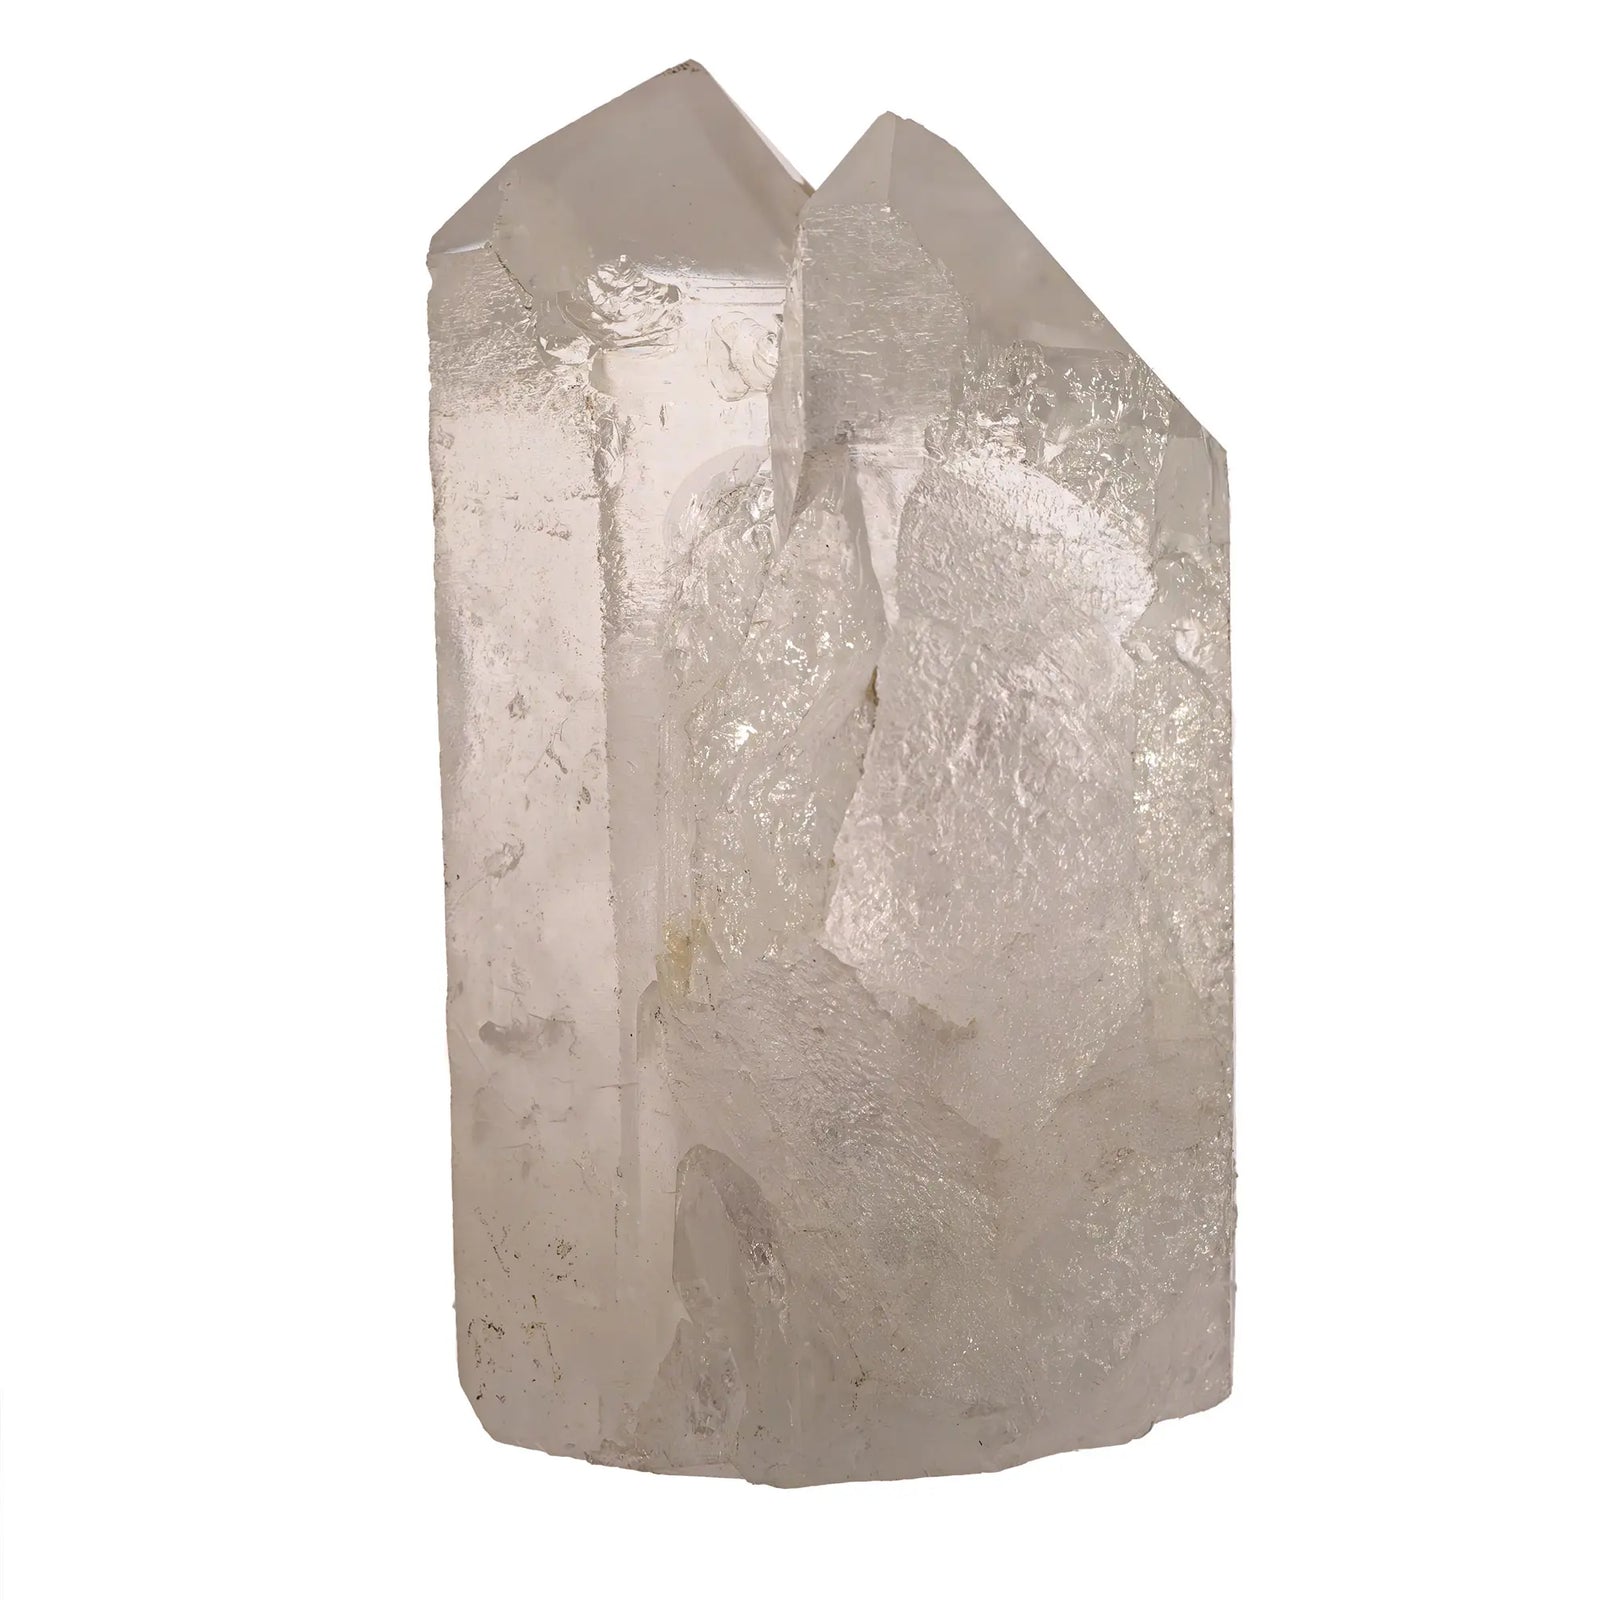 Cristal de roche - cristal brut  - CRISTAL SOURCES